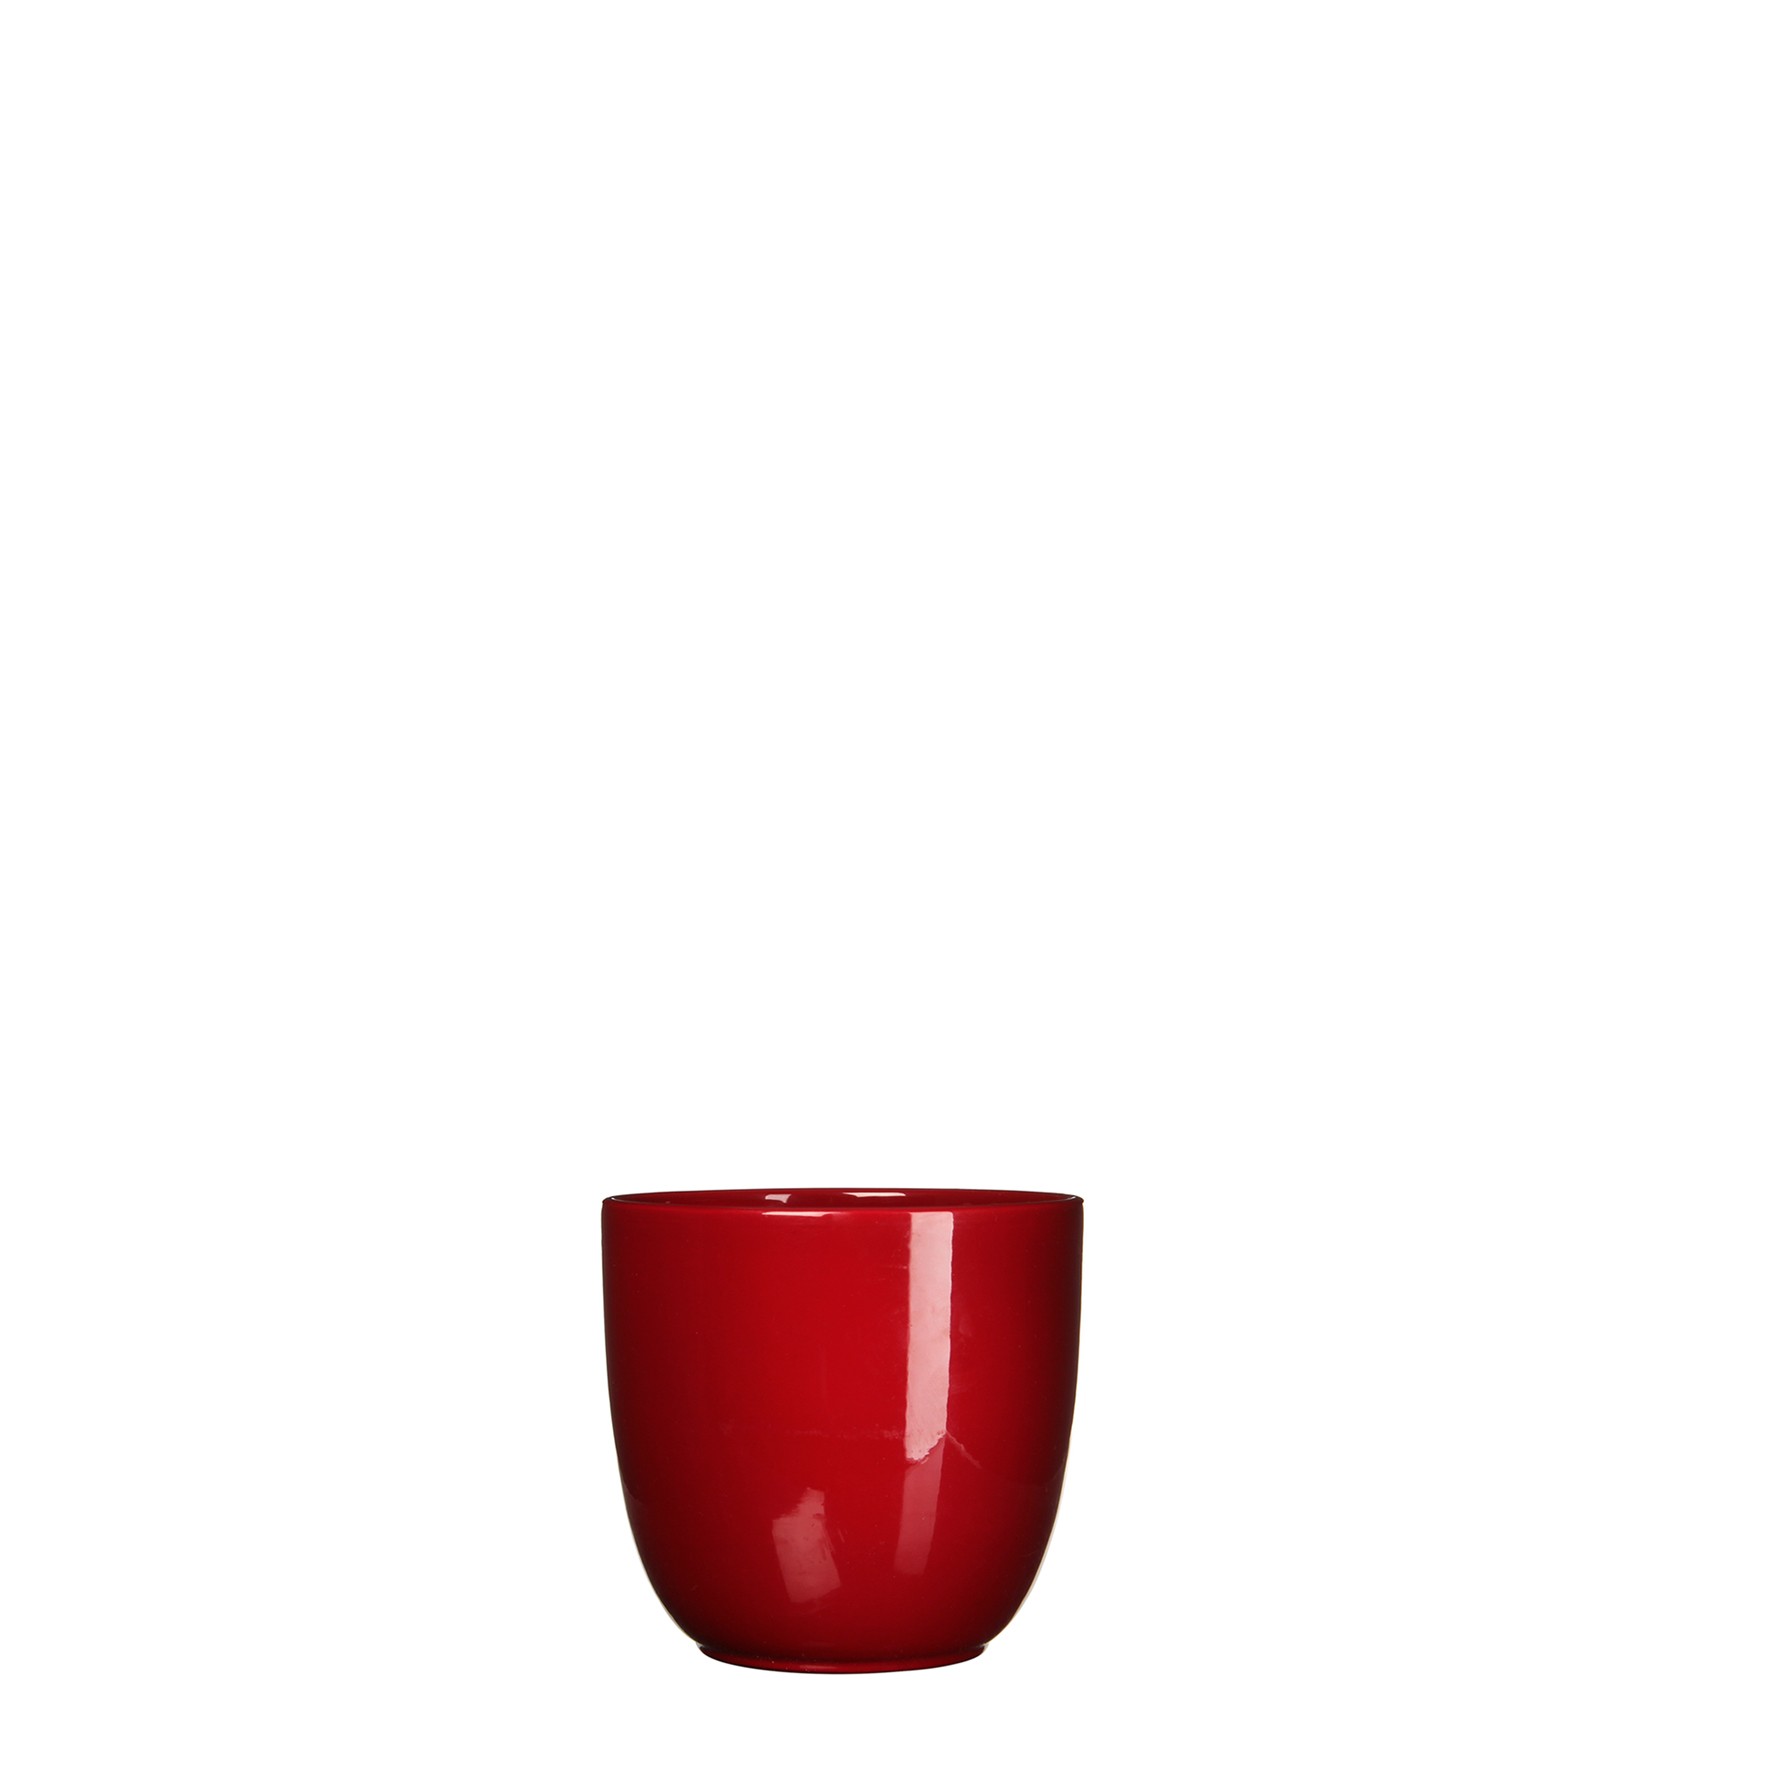 Bloempot Pot rond es/7 tusca 7.5 x 8.5 cm d.rood Mica - Mica Decorations